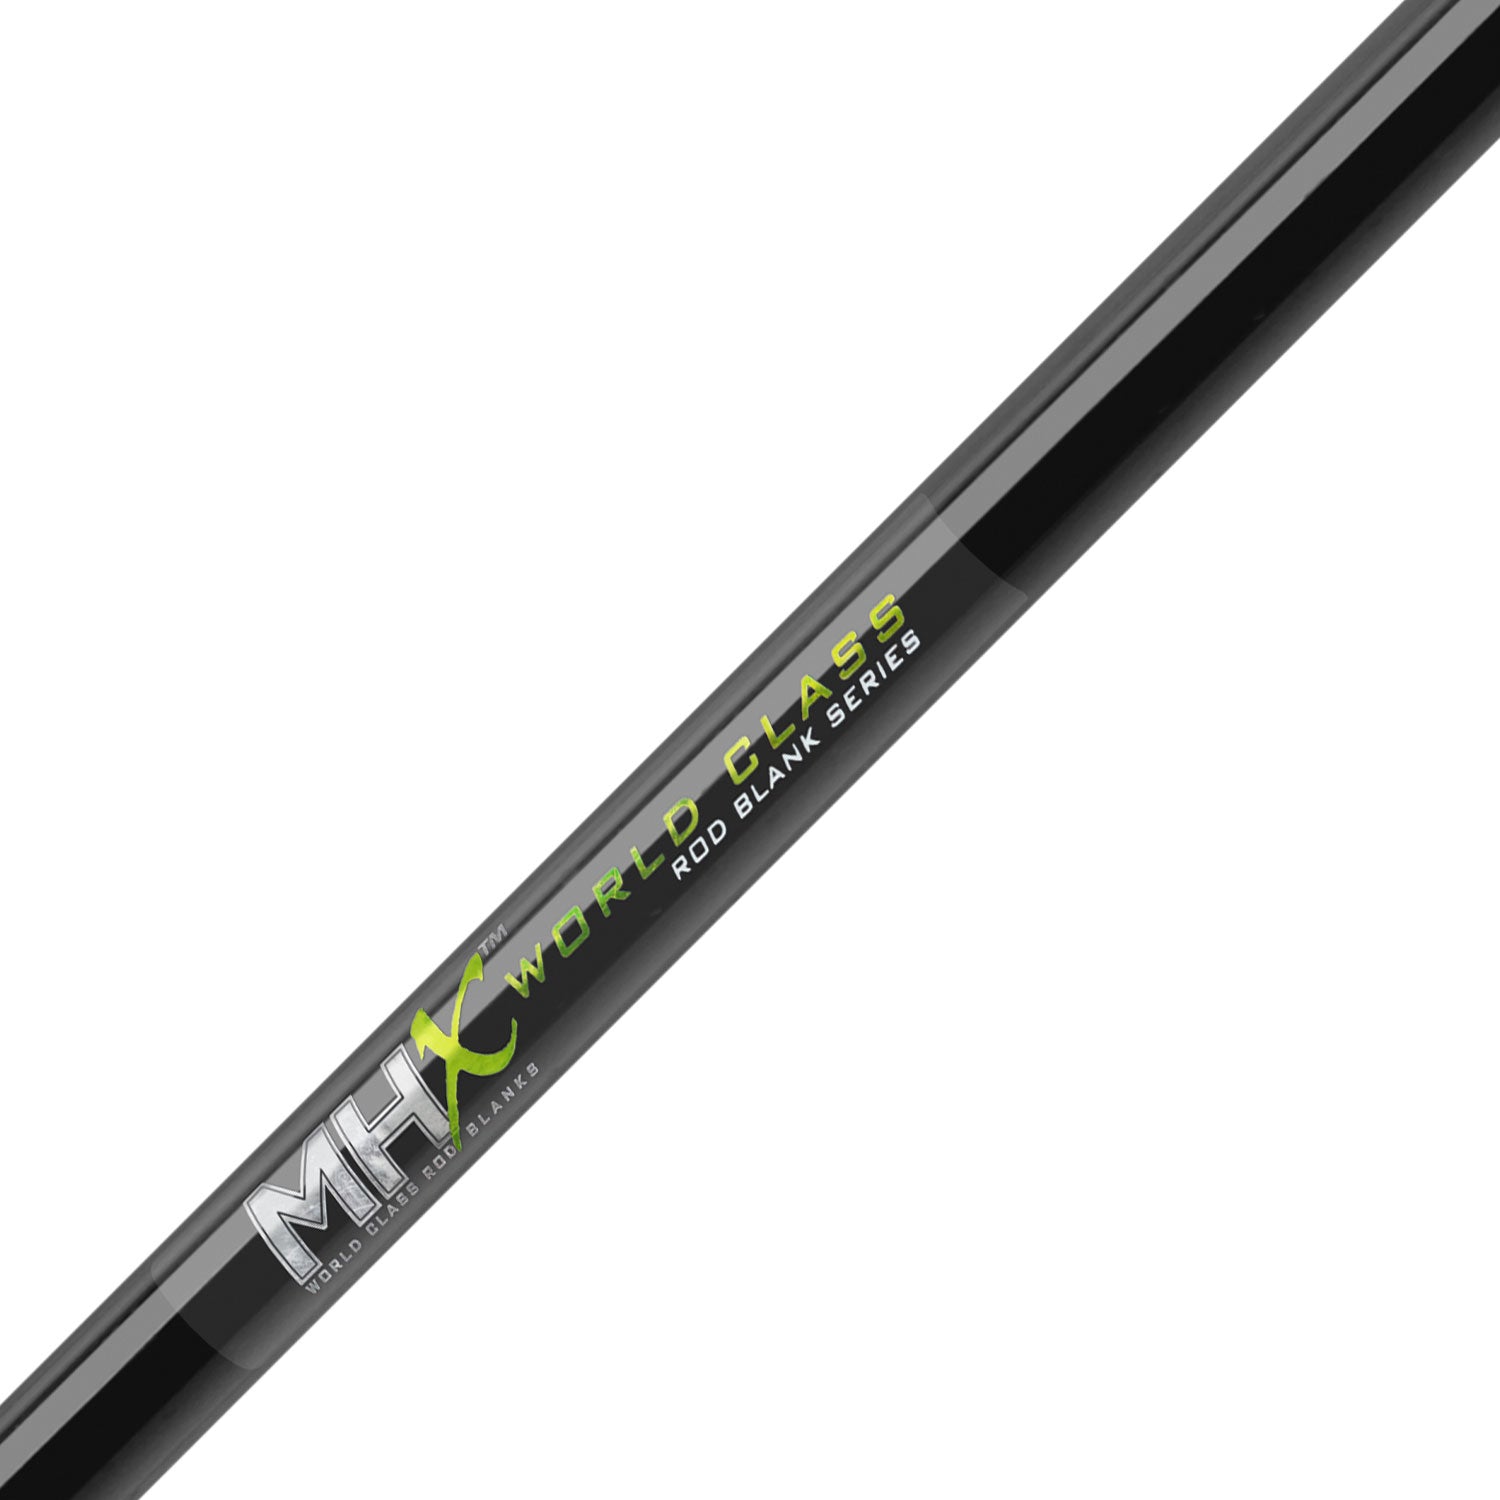 MHX 8'0" Med-Light Surf Rod Blank - SU965F-MHX